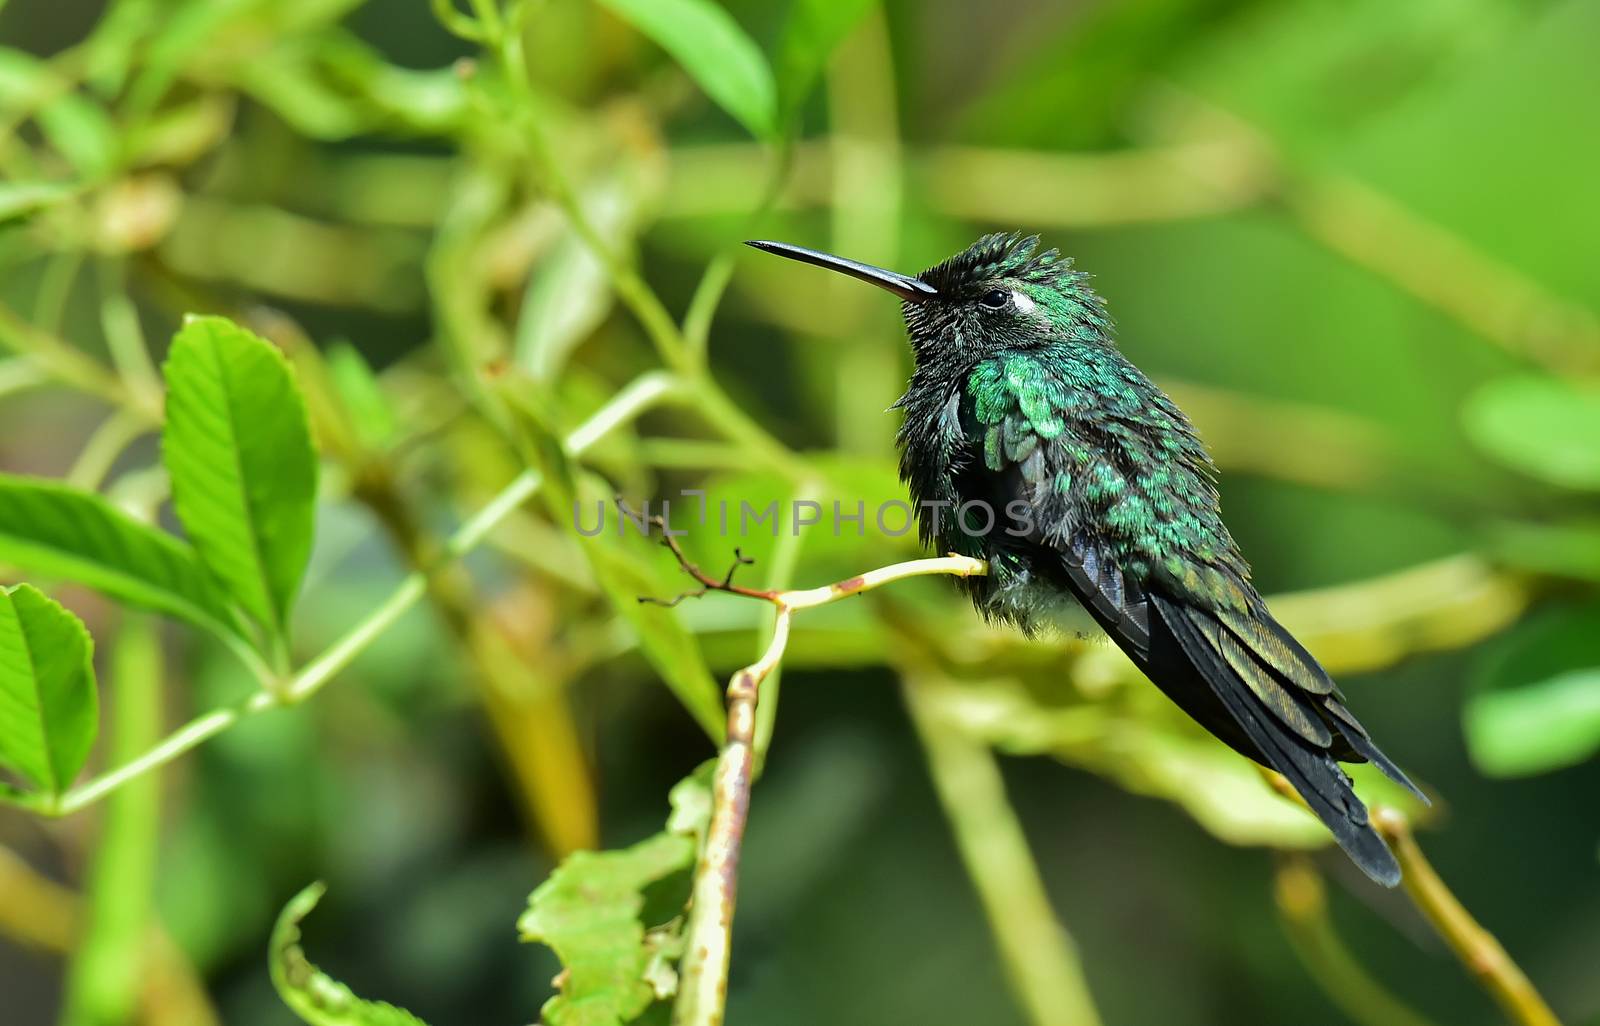  Cuban Emerald Hummingbird (Chlorostilbon ricordii) by SURZ